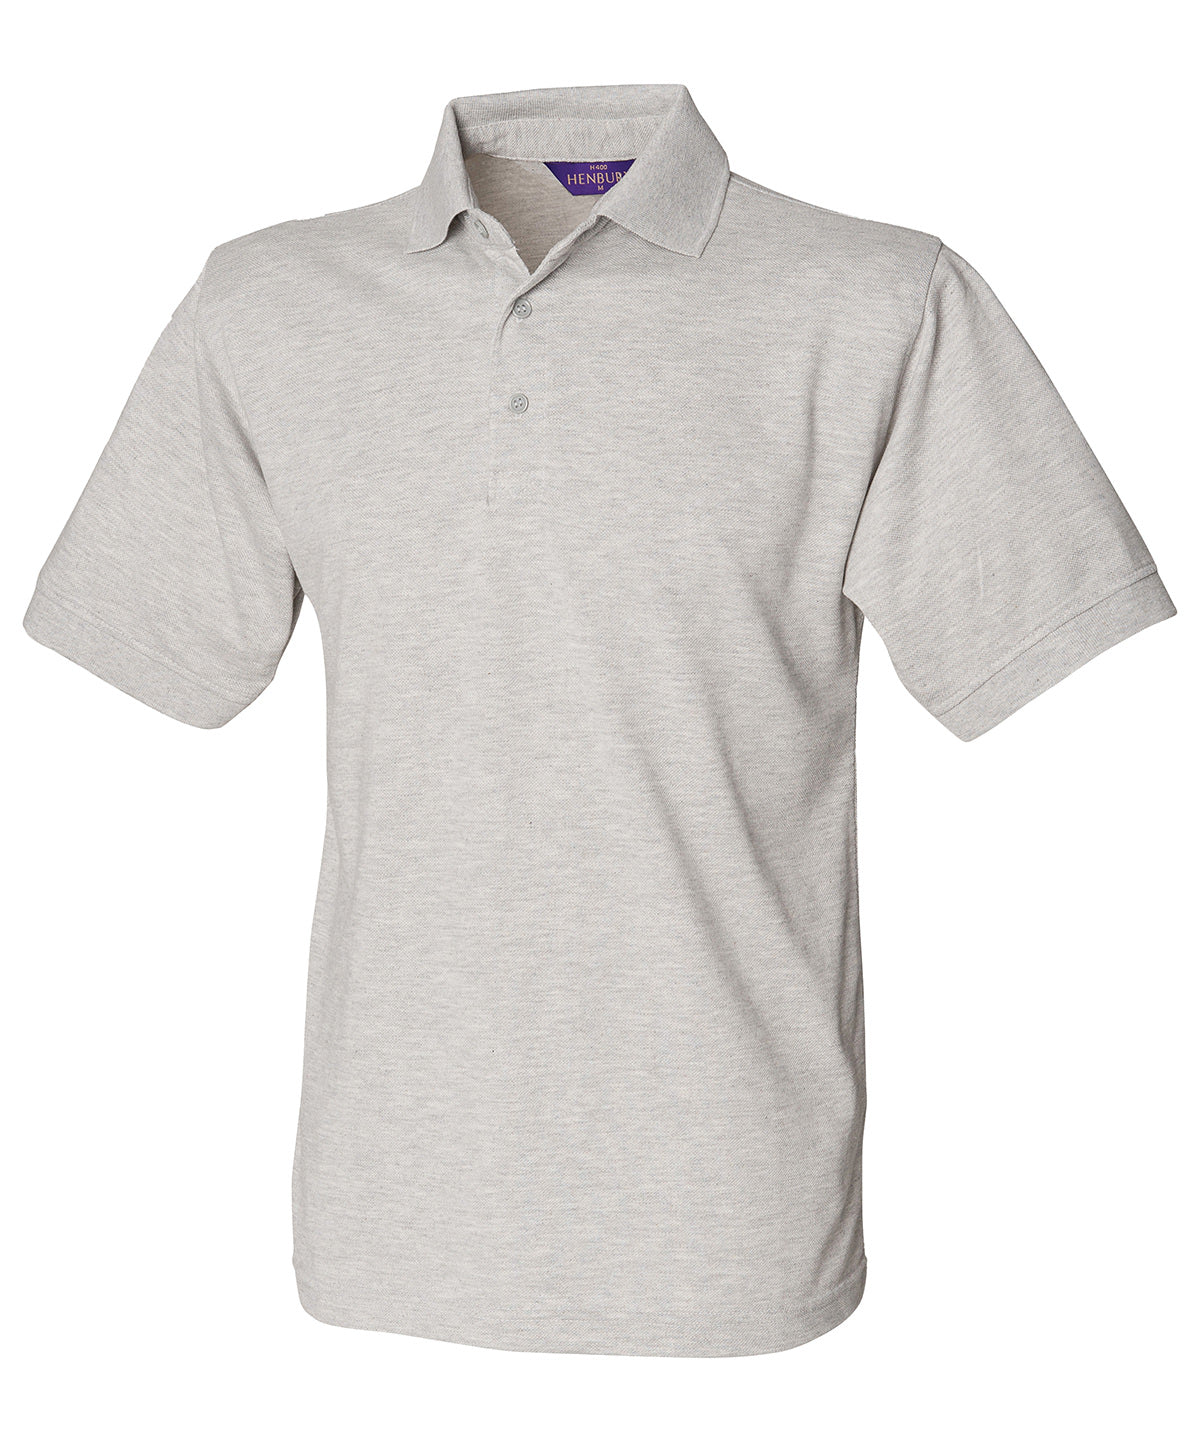 Personalised Polo Shirts - Black Henbury 65/35 Classic piqué polo shirt